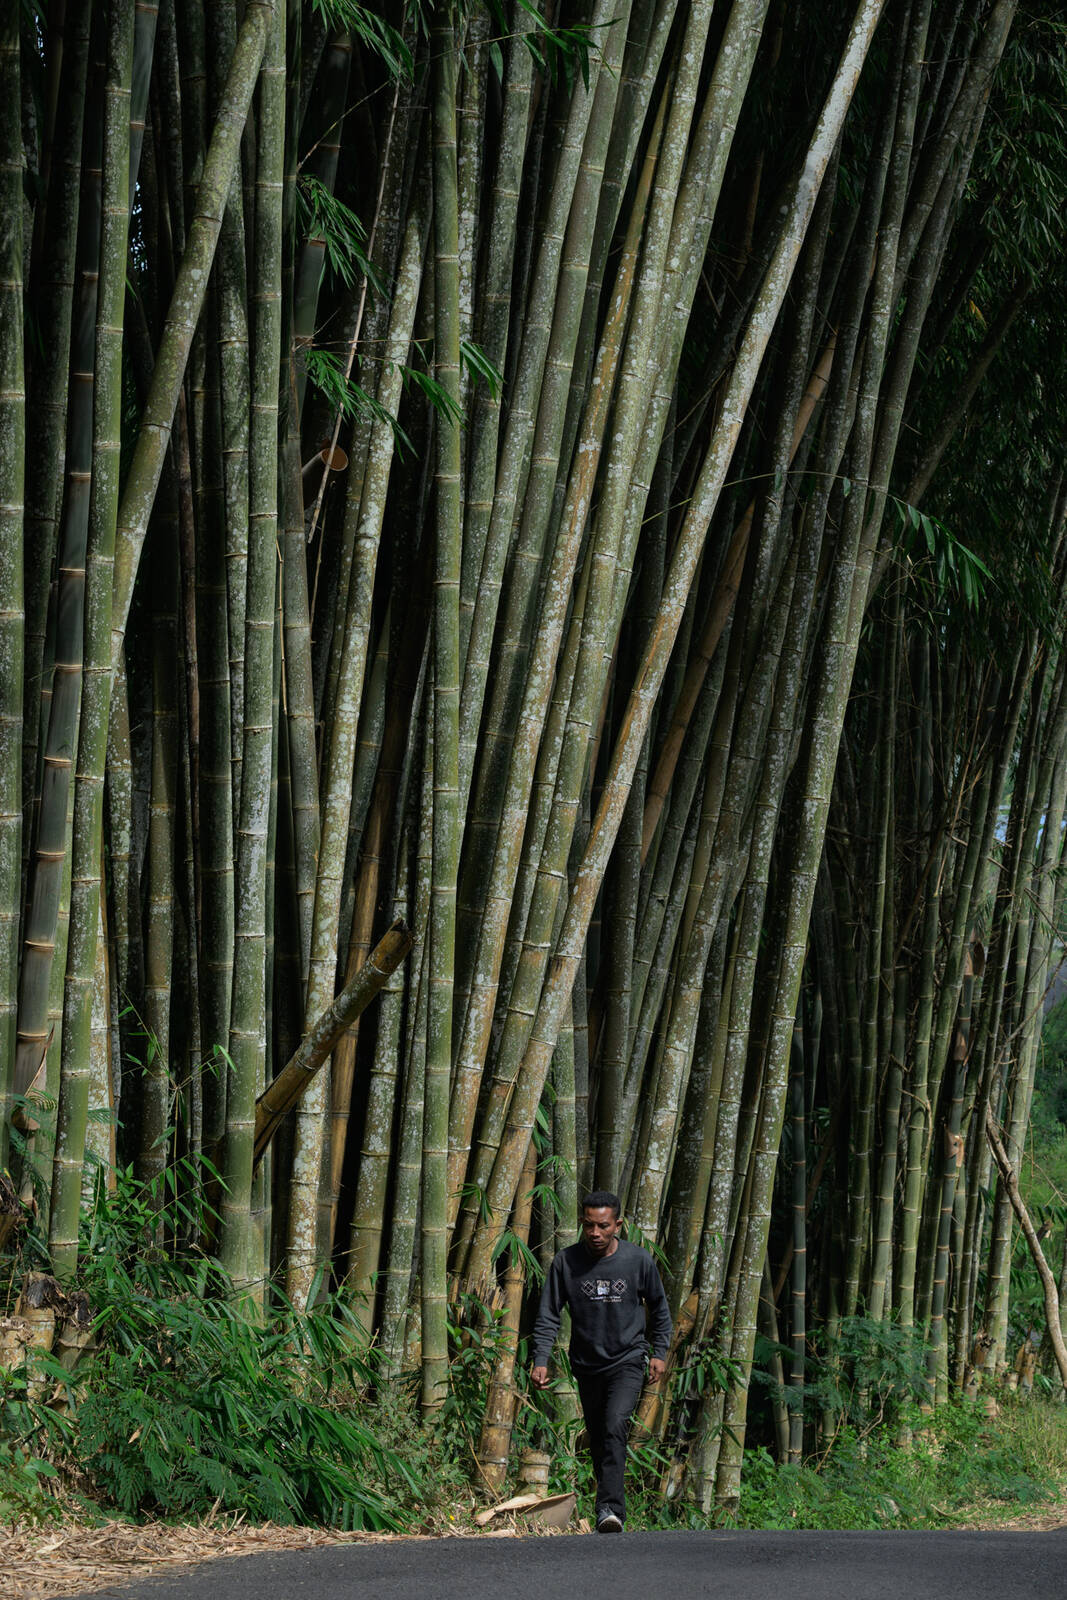 Image of Bamboo Forest near Bajawa by Luka Esenko